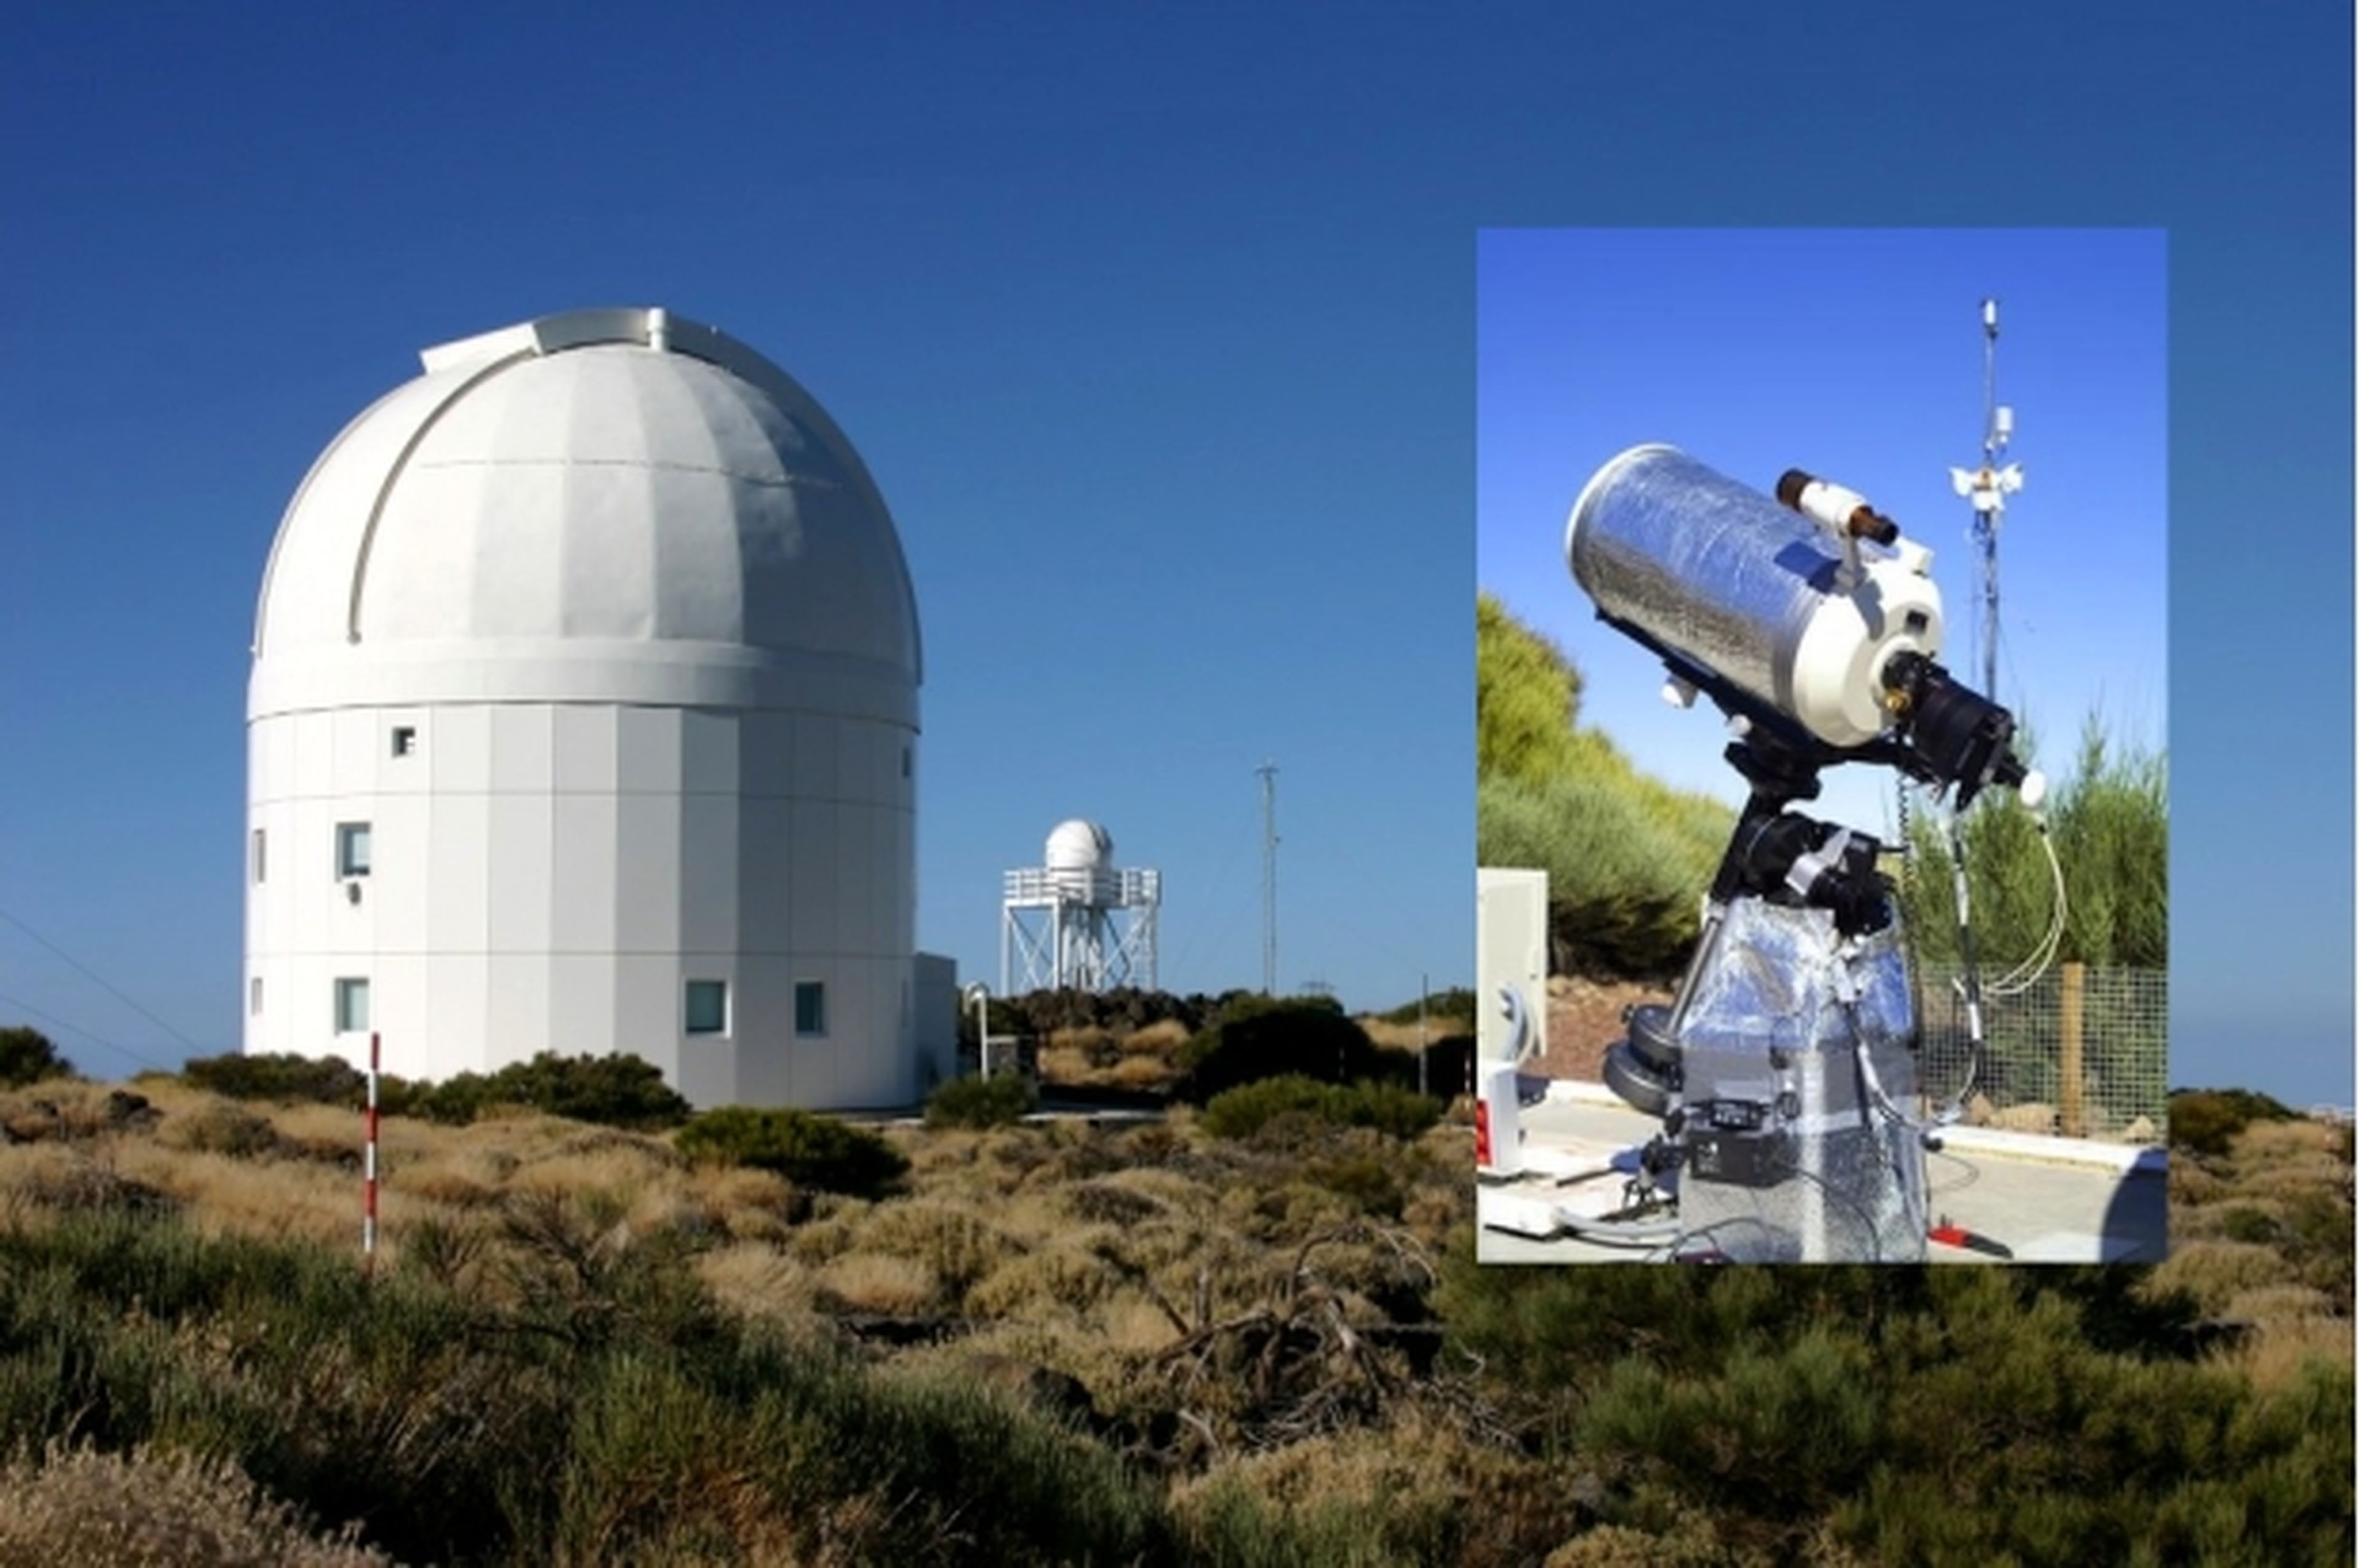 Controla un telescopio del Observatorio del Teide desde casa Computer Hoy